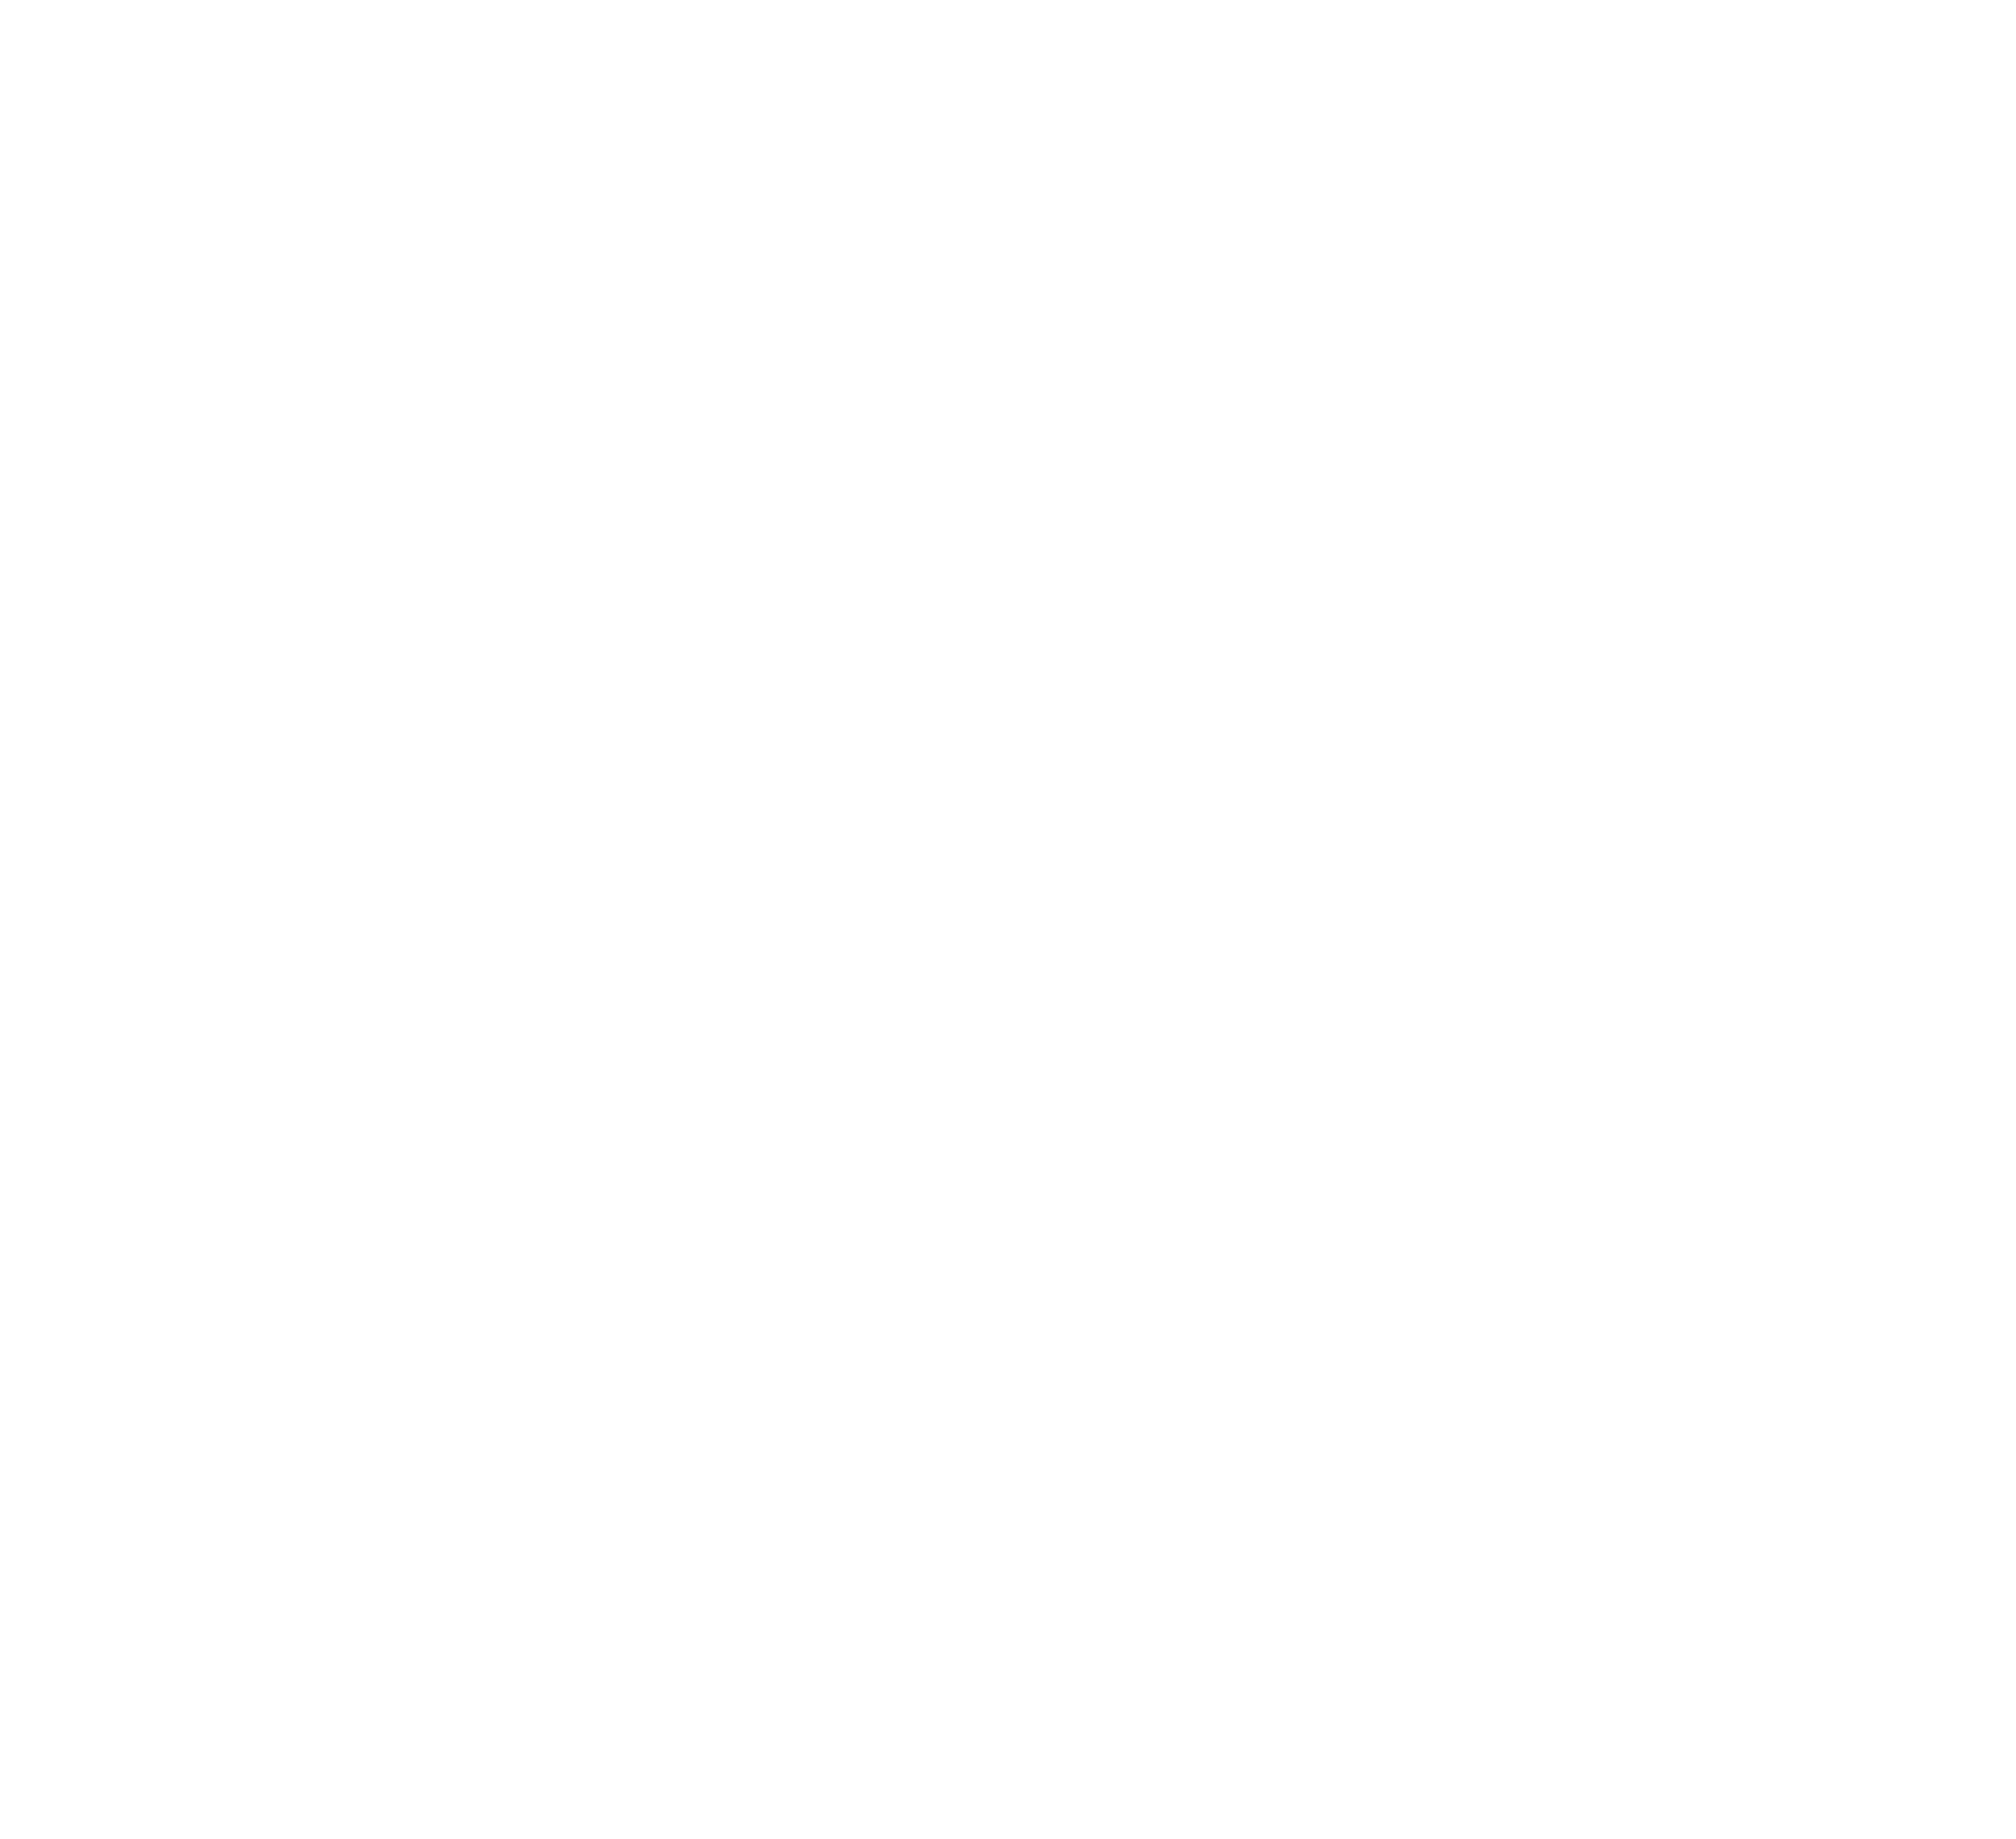 Dragon tasmania logo